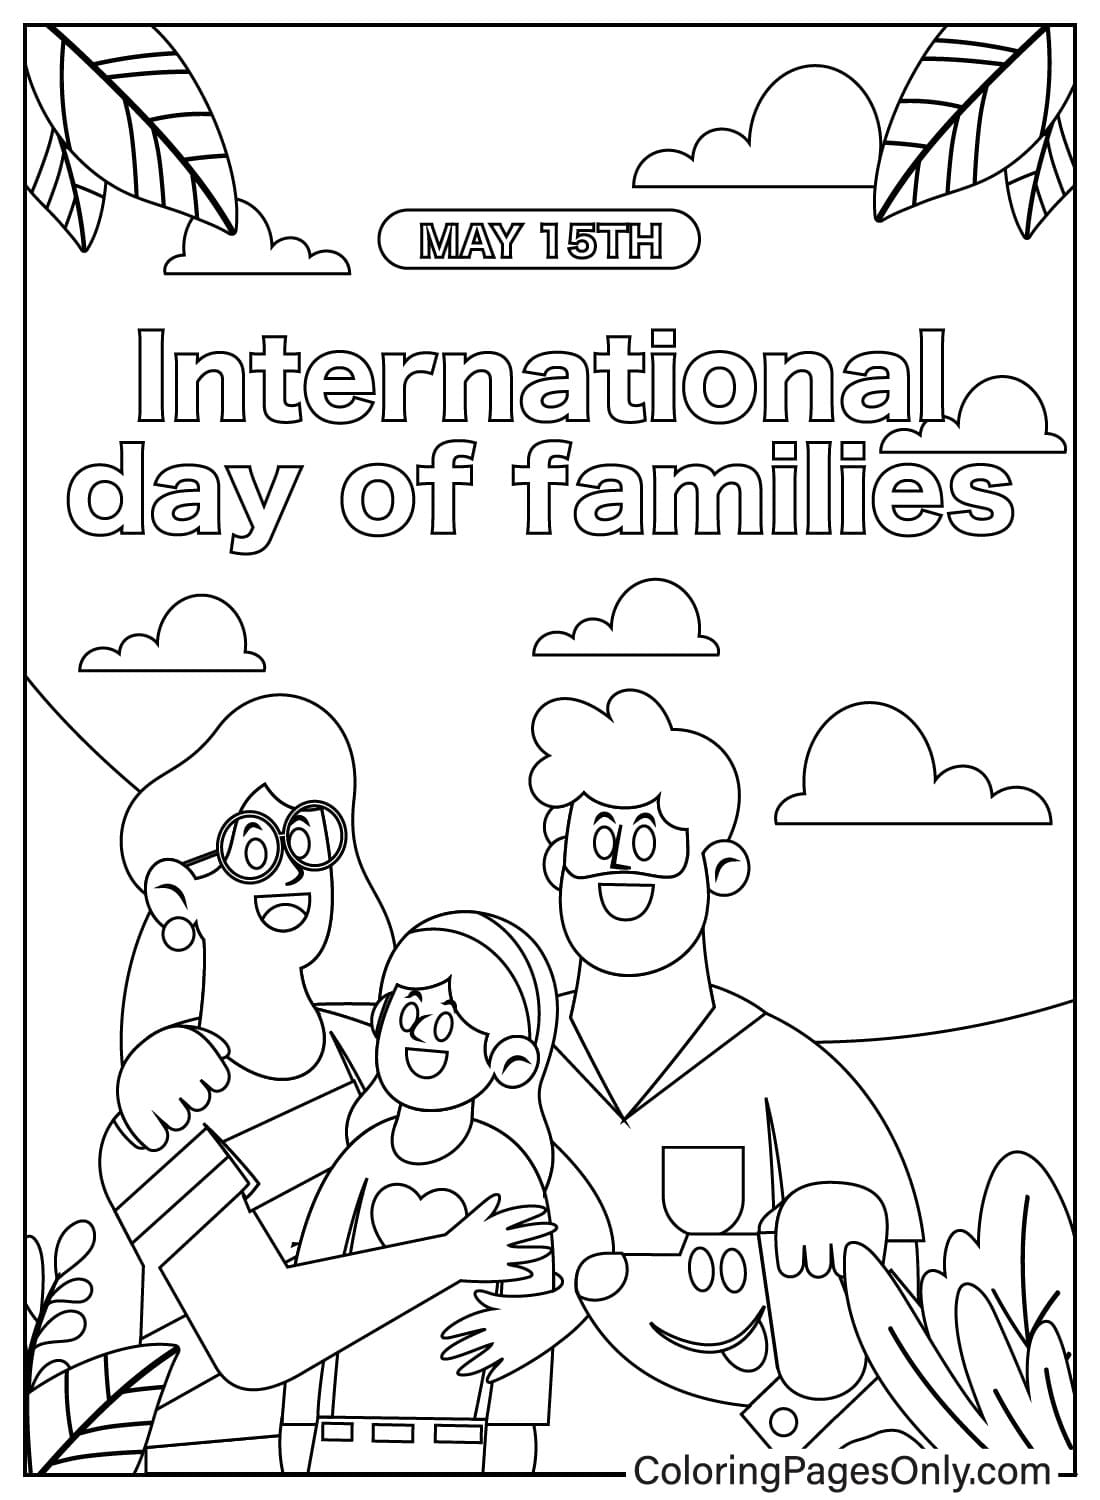 Página para colorir do Dia Internacional das Famílias do Dia da Família